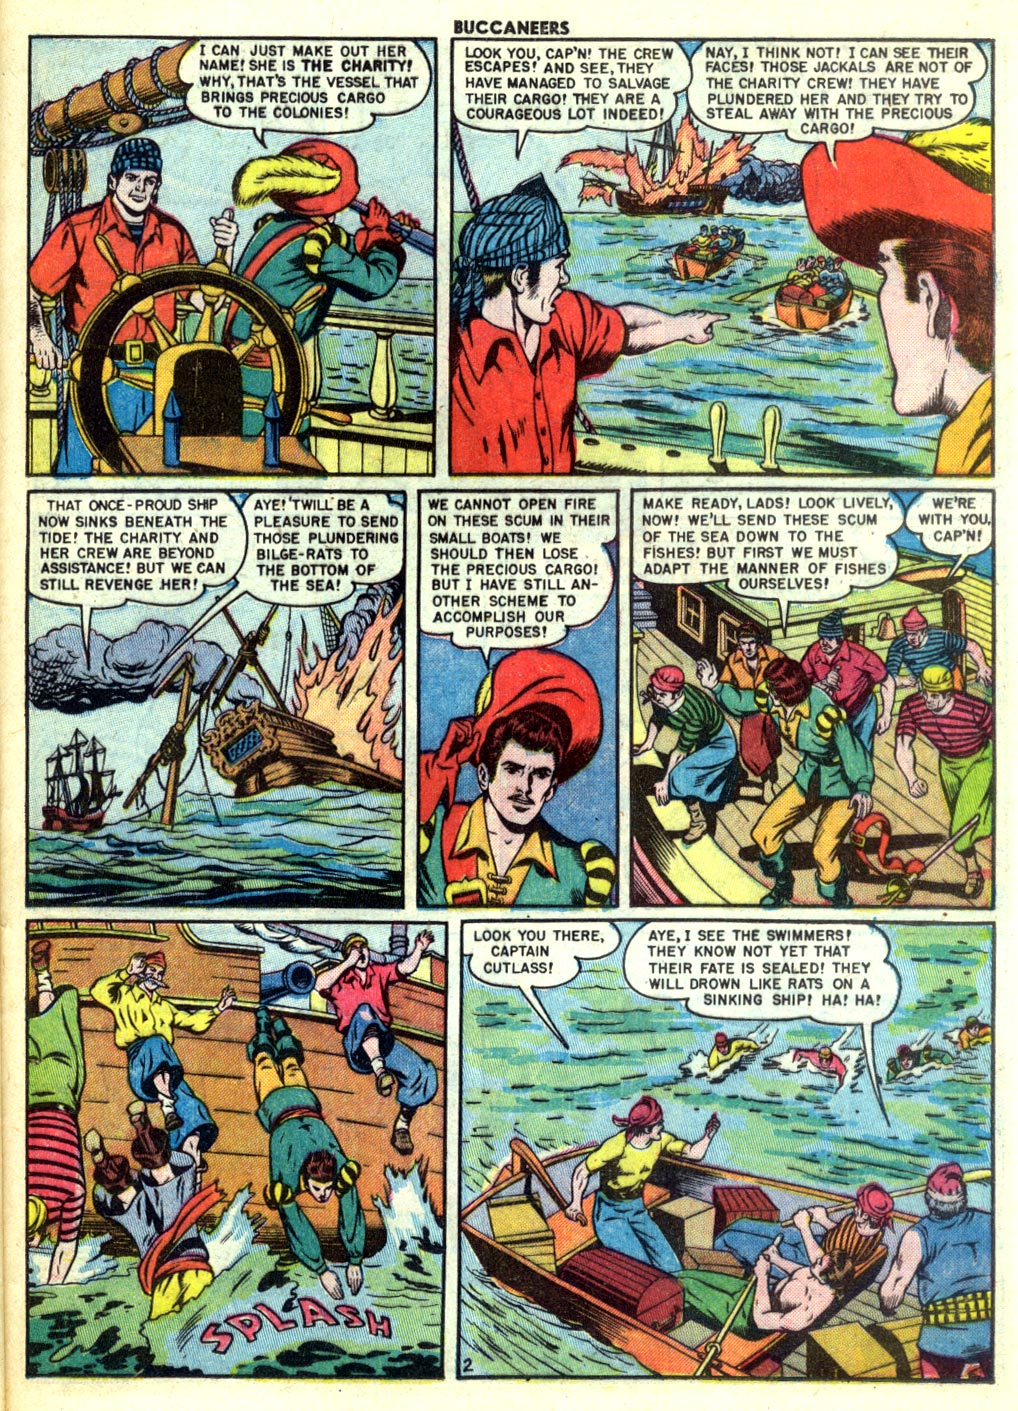 Read online Buccaneers comic -  Issue #27 - 37